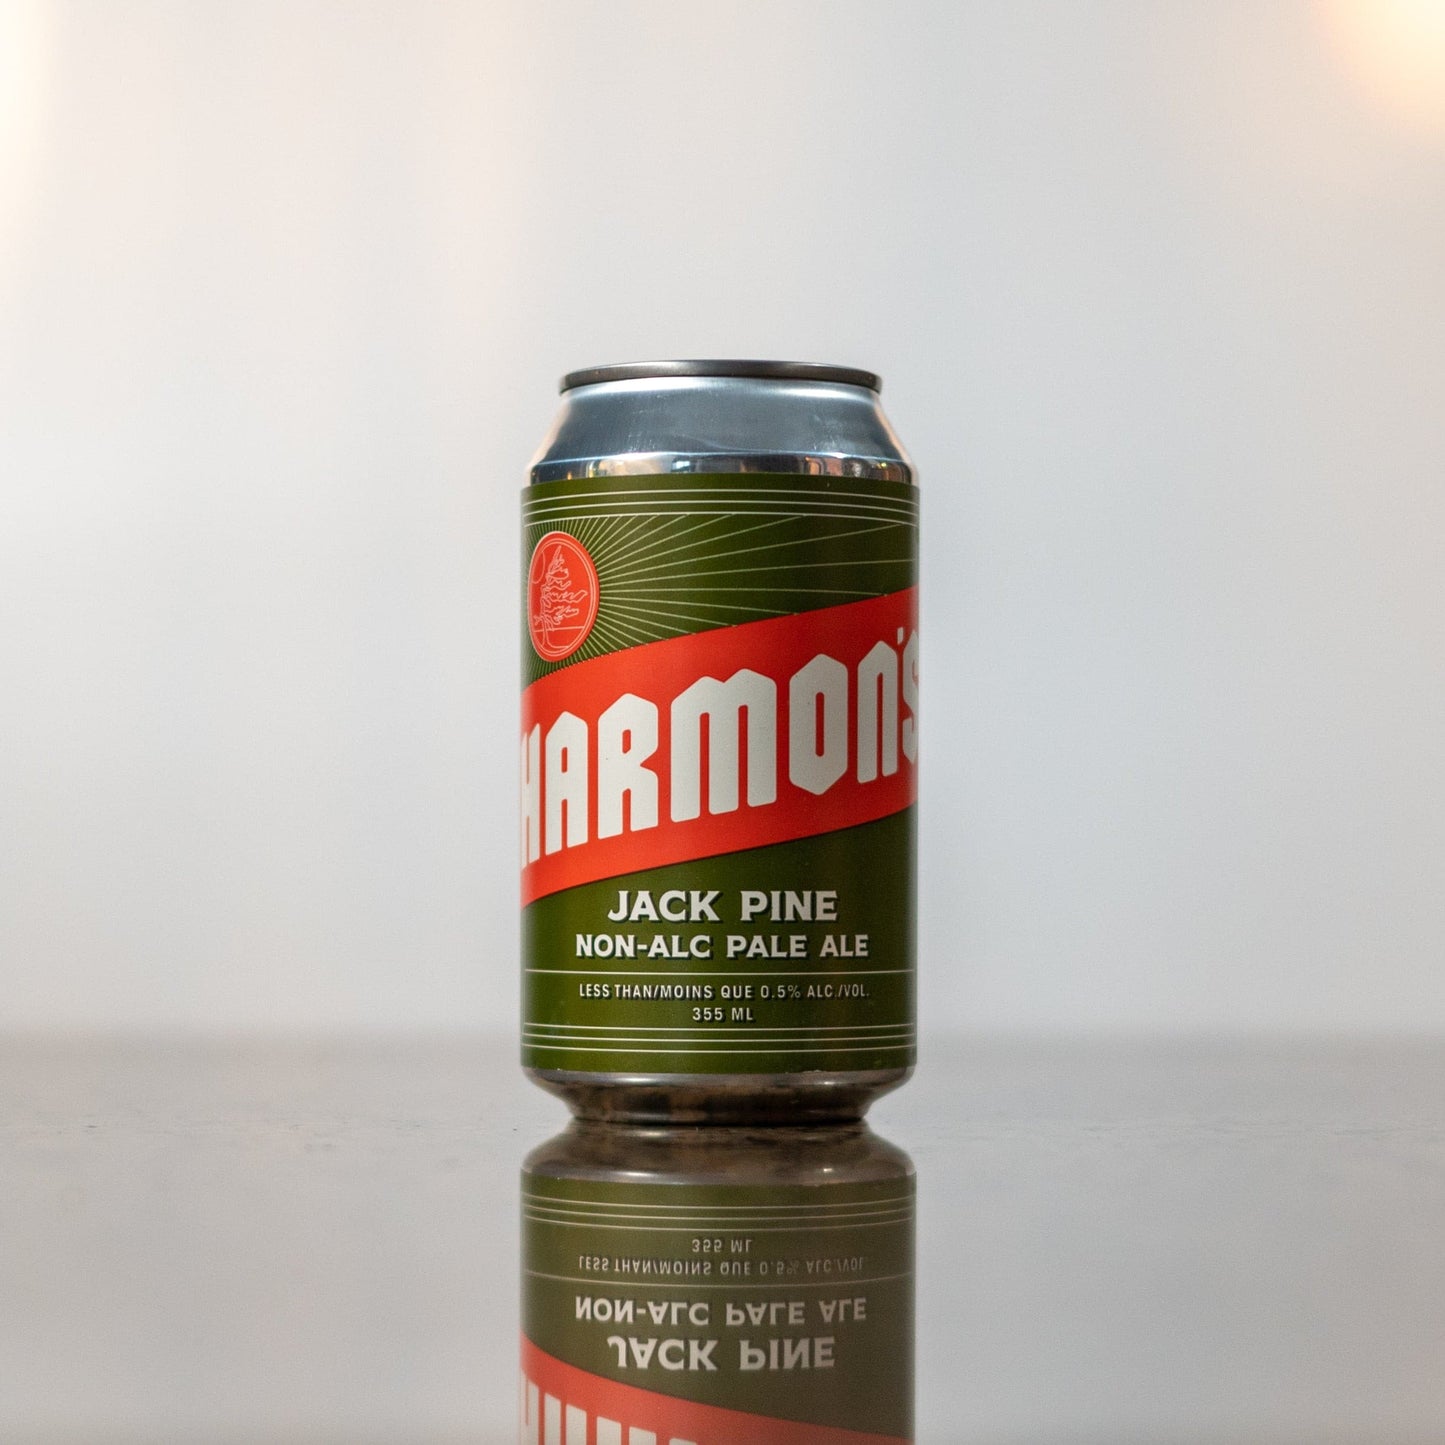 Harmon's Non-Alcoholic Jack Pine Pale Ale.